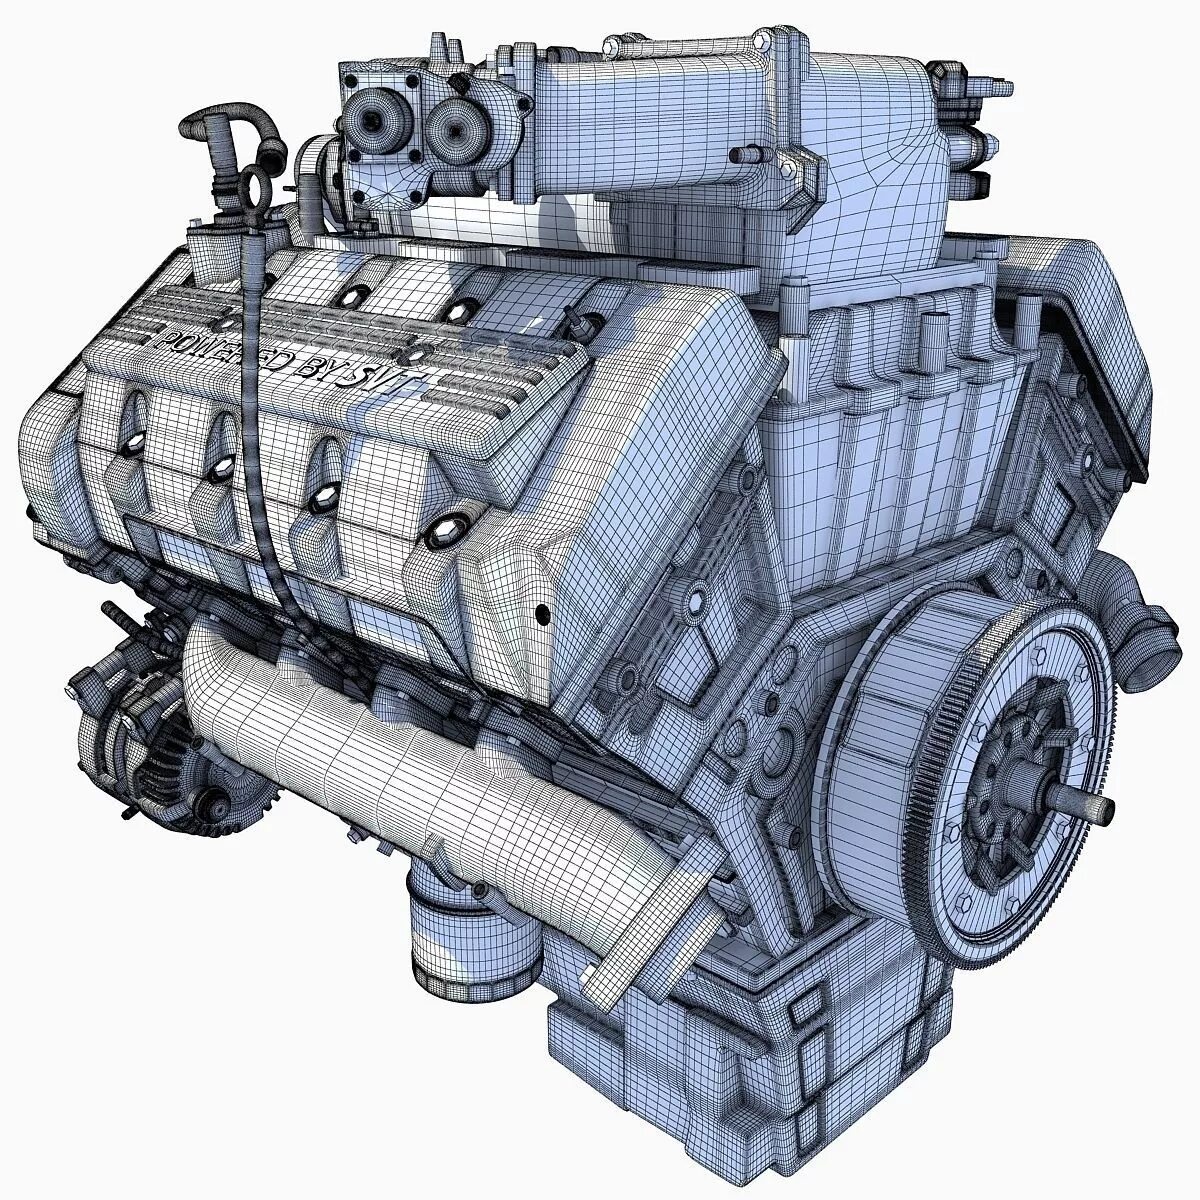 Двигатель д3. 3д модель двигателя 3д6. 3д модель двигателя FPT s30entm2. 3d Max двигатель модель. М1070 engine 3d model.